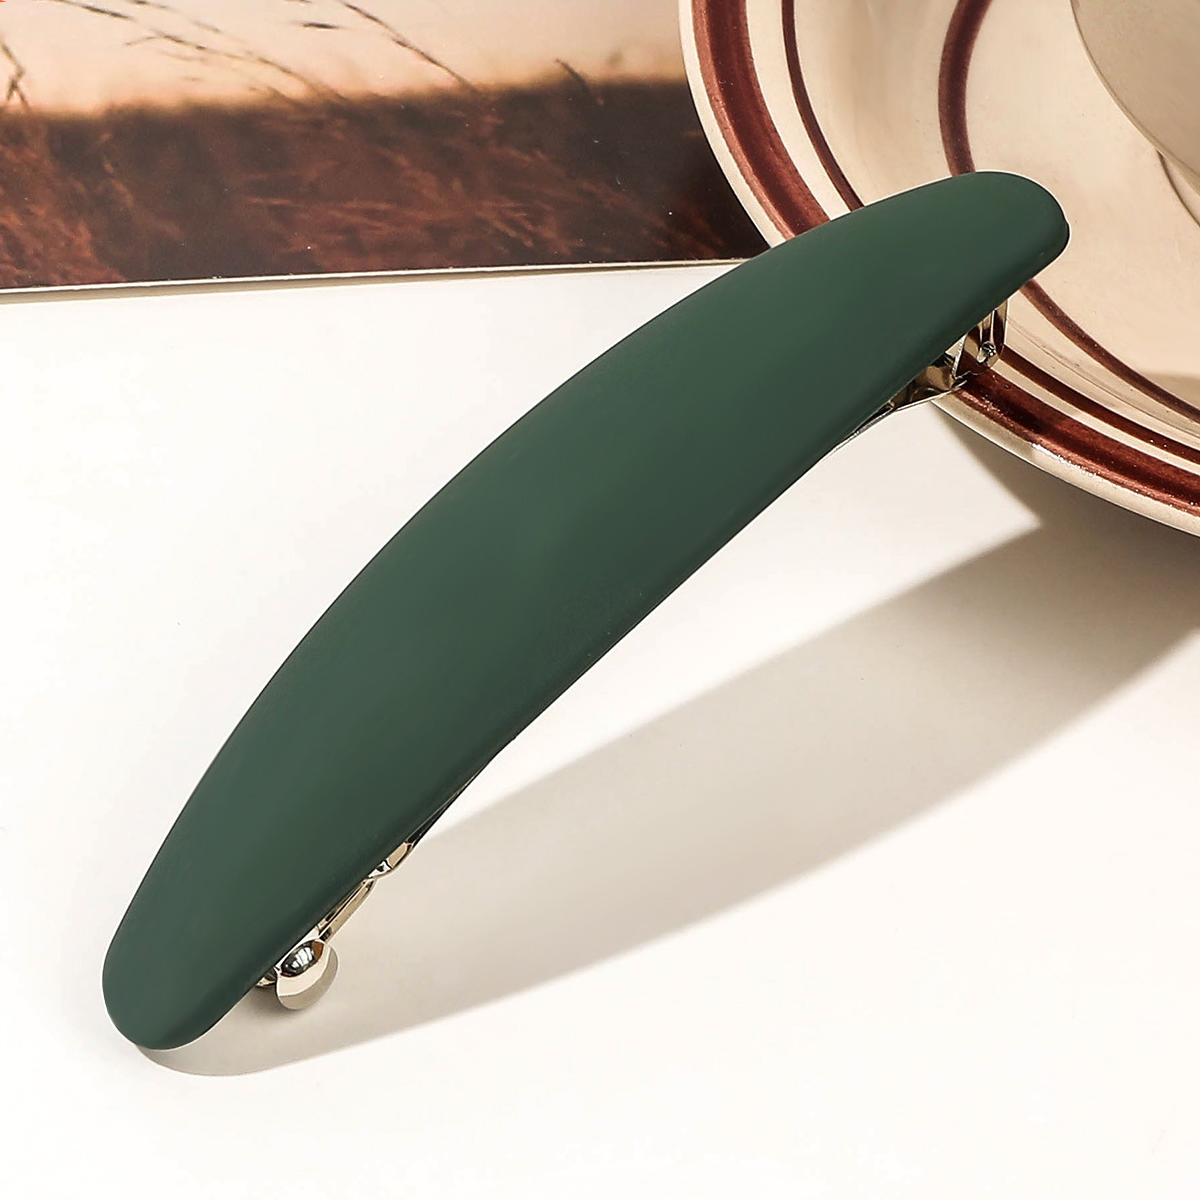 110.5cm oval spring clamp - dark green